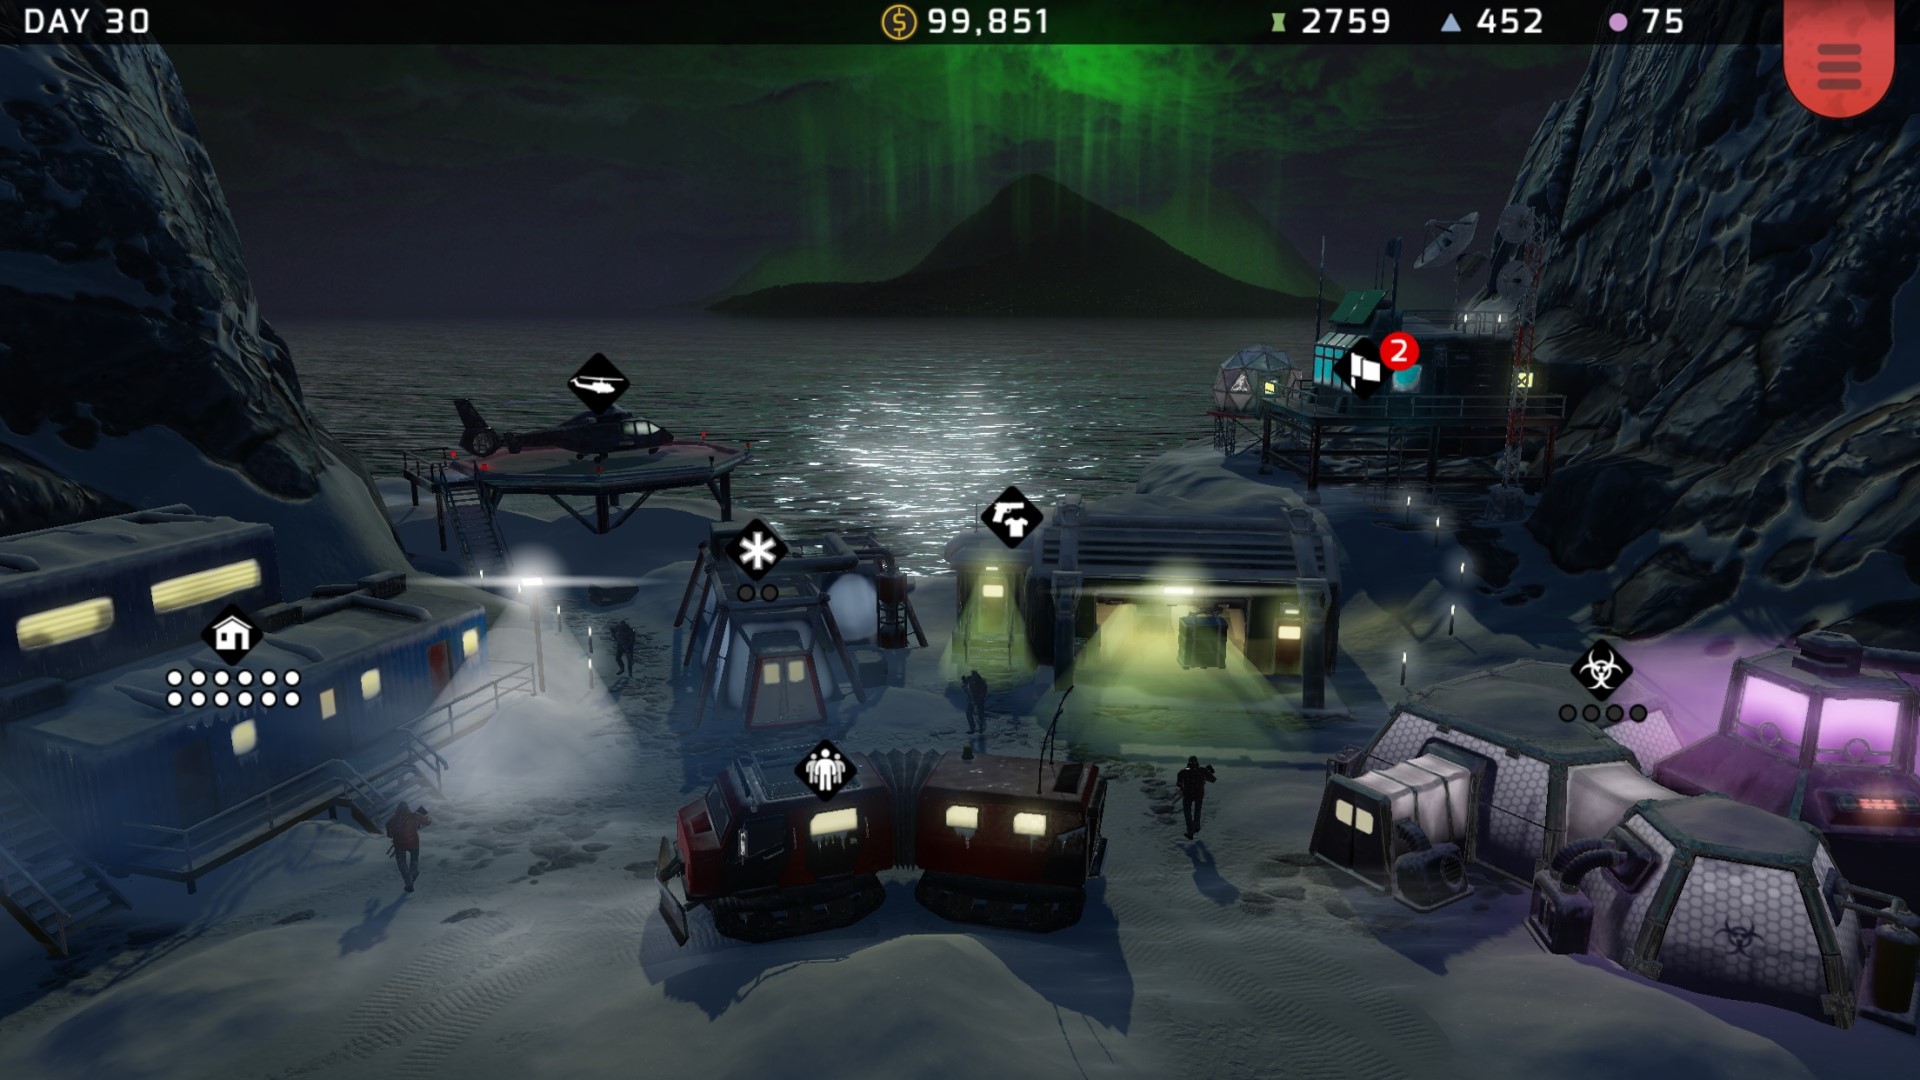 Los mejores juegos de estrategia móvil: Xenowerk Tactics. La imagen muestra una selección de vehículos militares sentados junto al océano por la noche